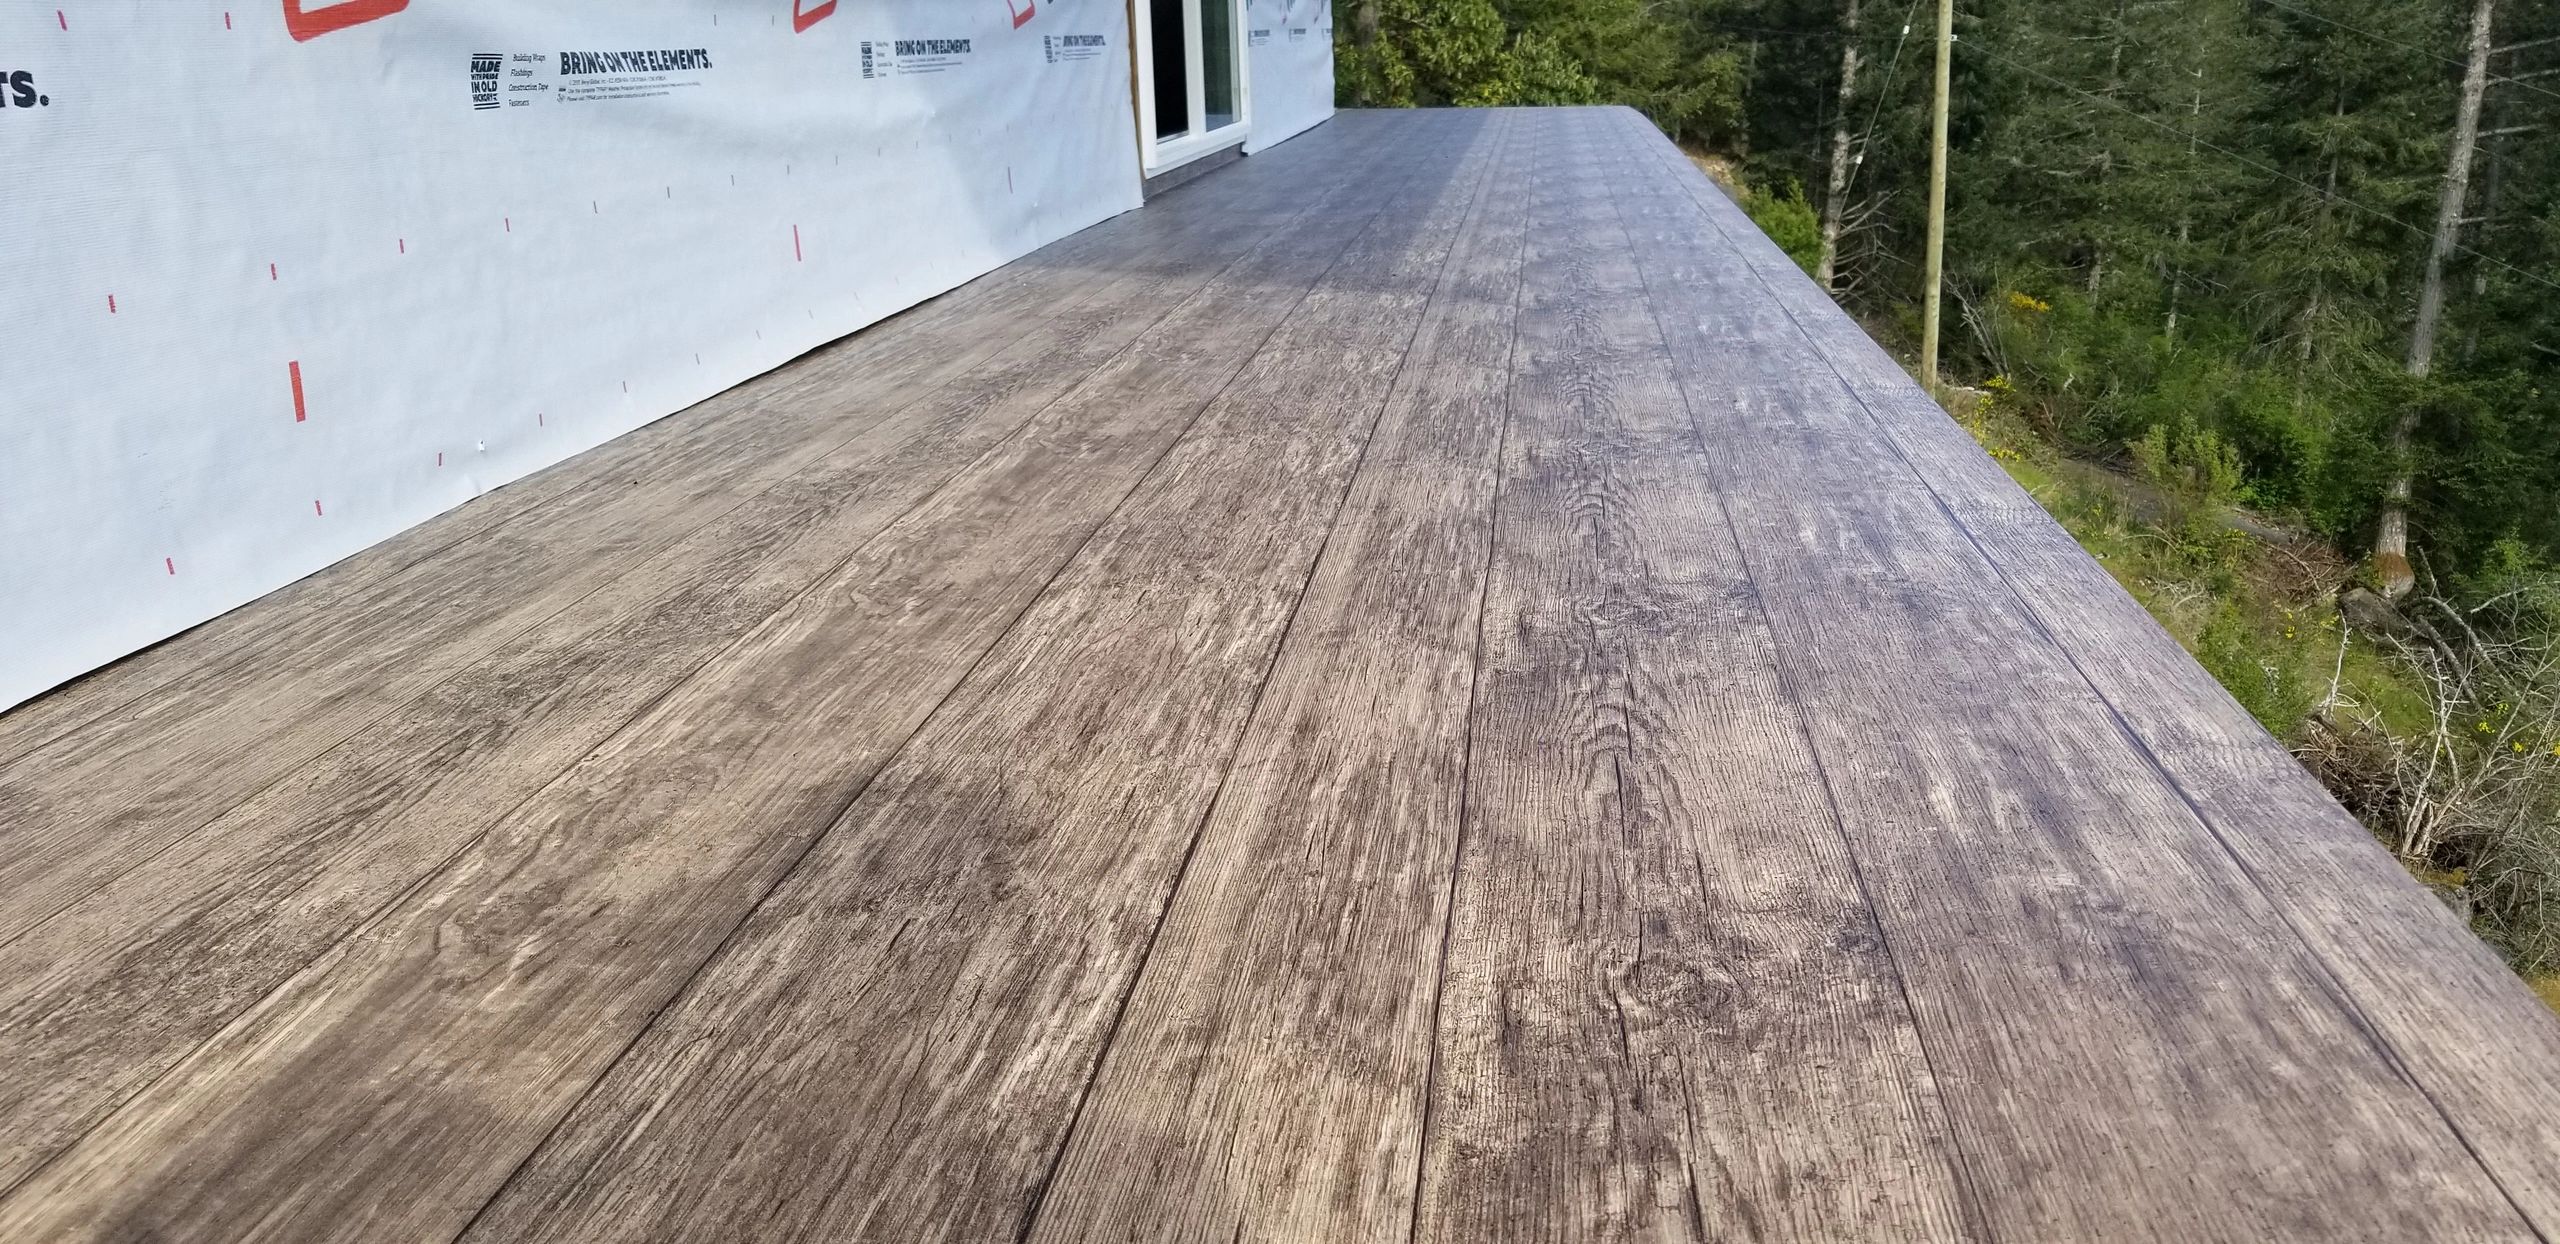 Wood grain vinyl deck